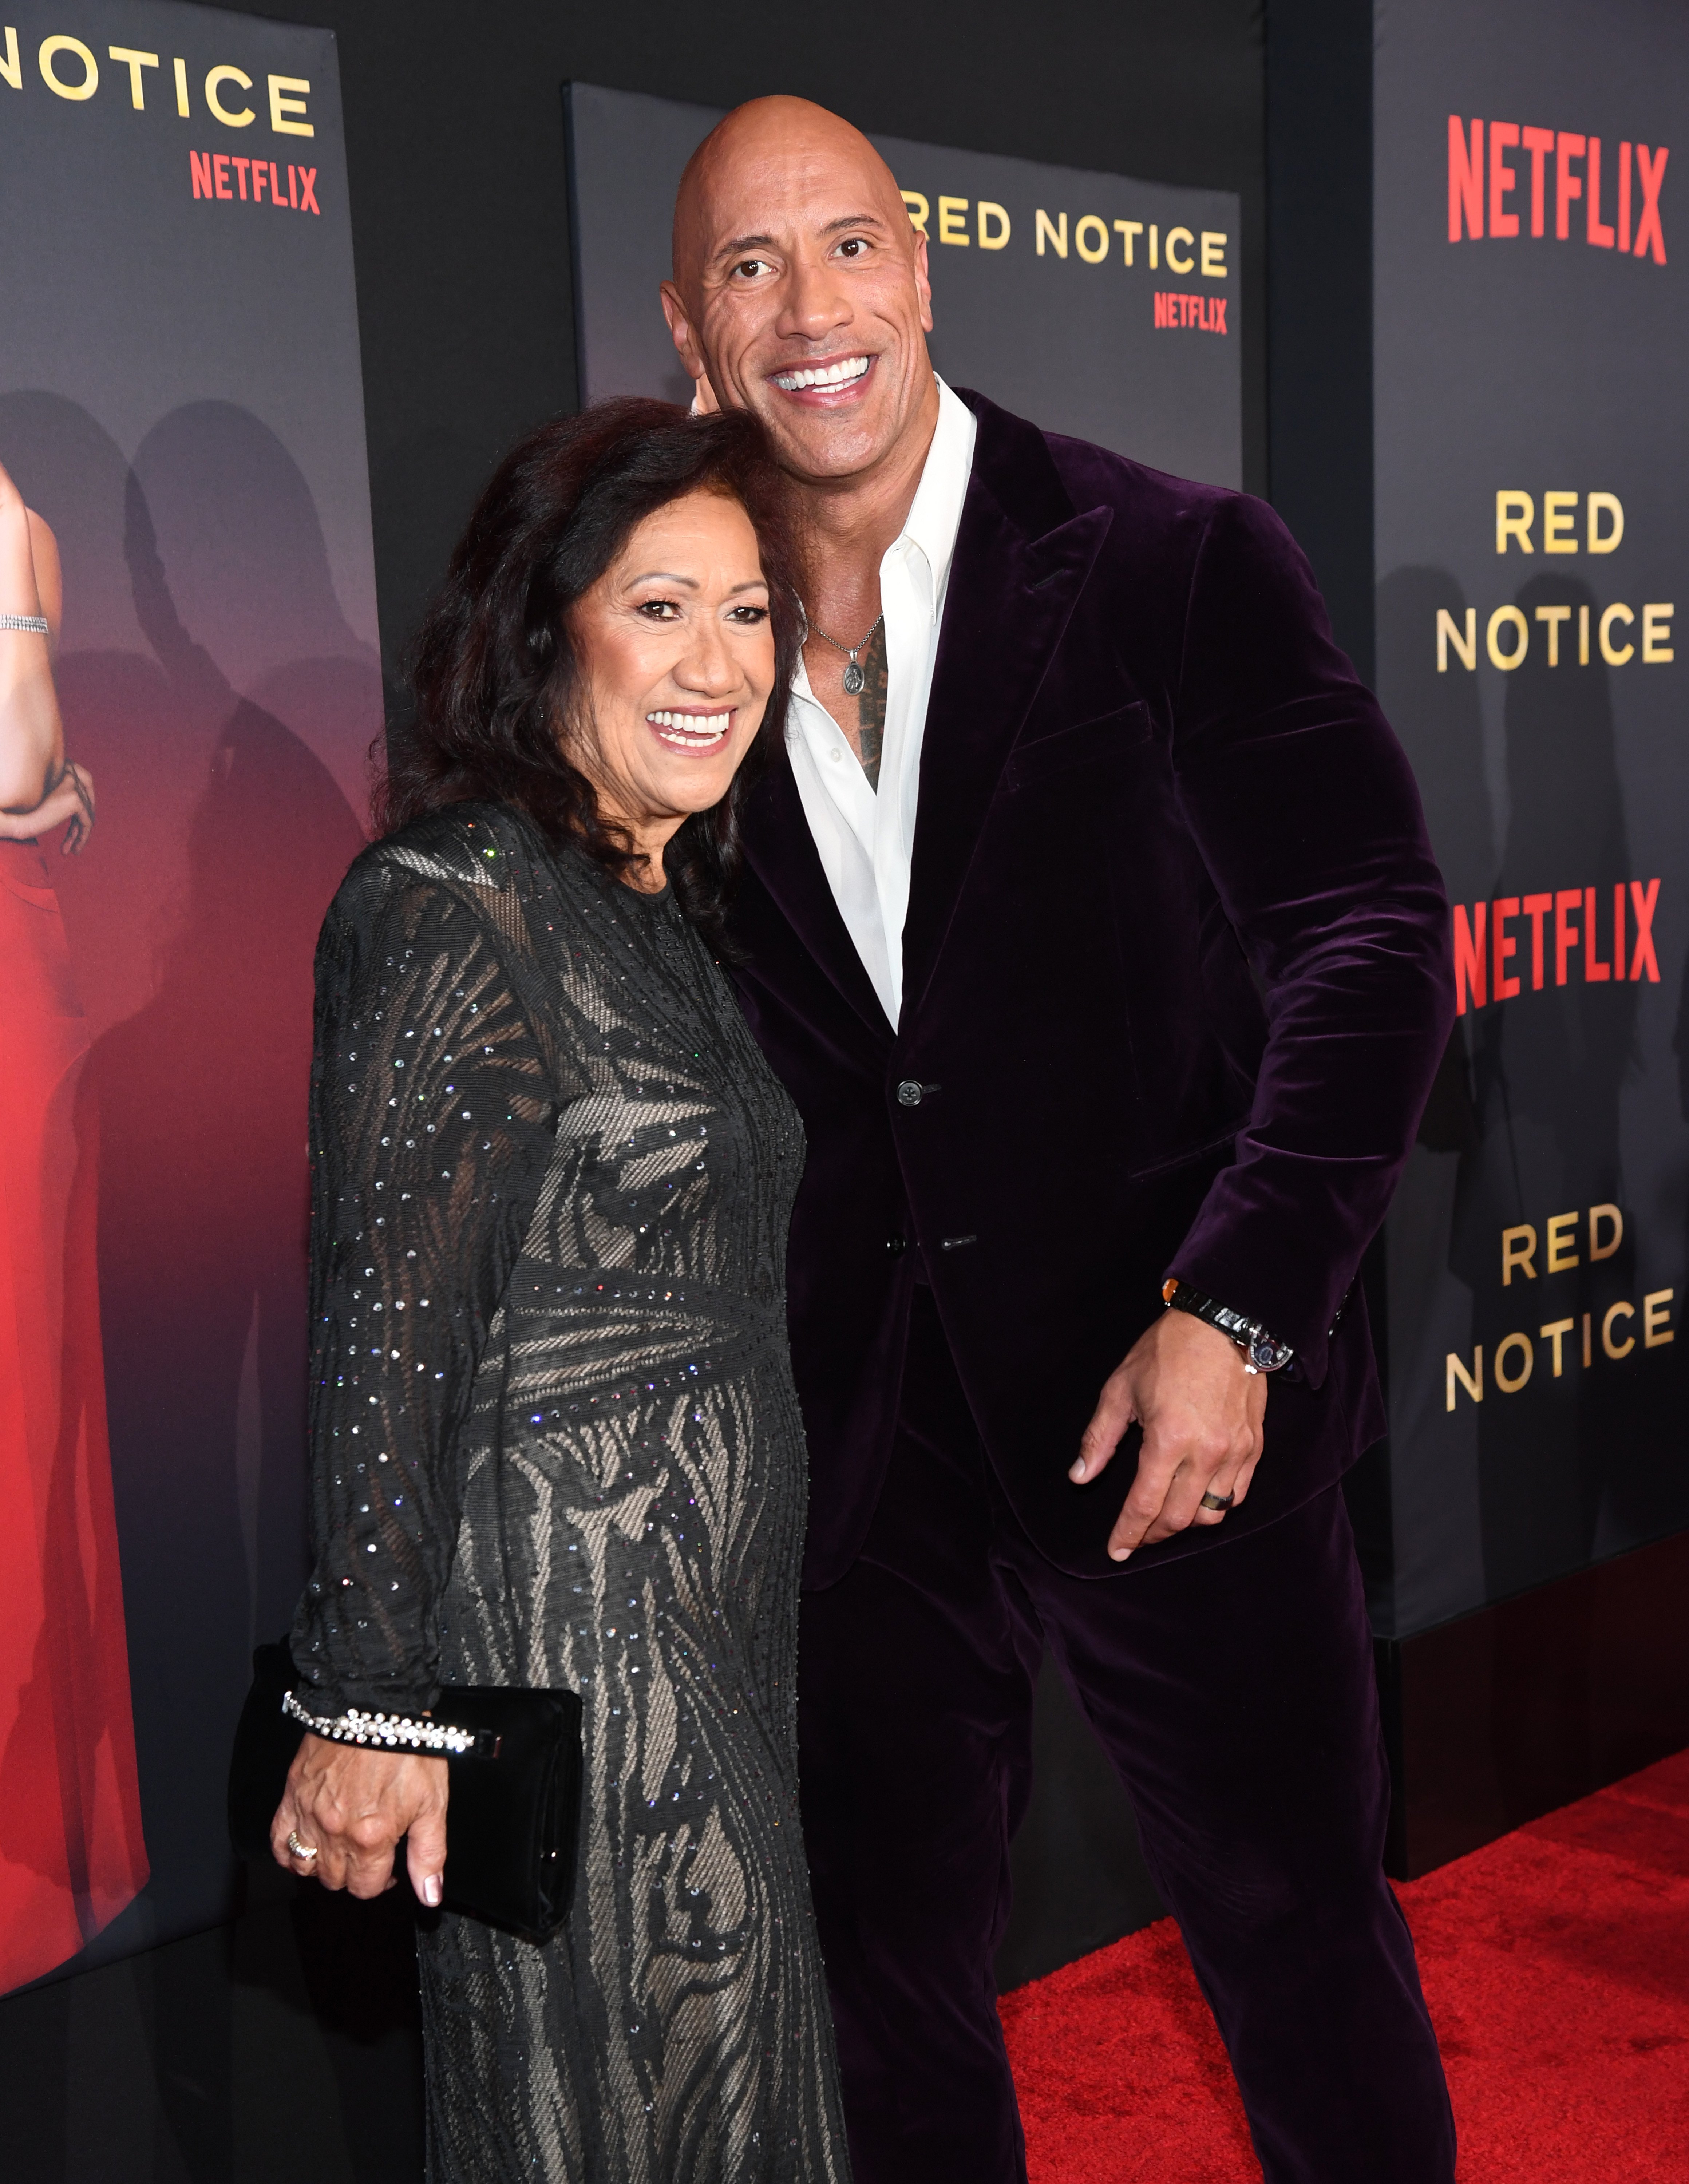 Ata Johnson y Dwayne Johnson asisten al estreno mundial de "Red Notice" de Netflix en Regal LA Live el 3 de noviembre de 2021 en Los Ángeles, California | Foto: Getty Images